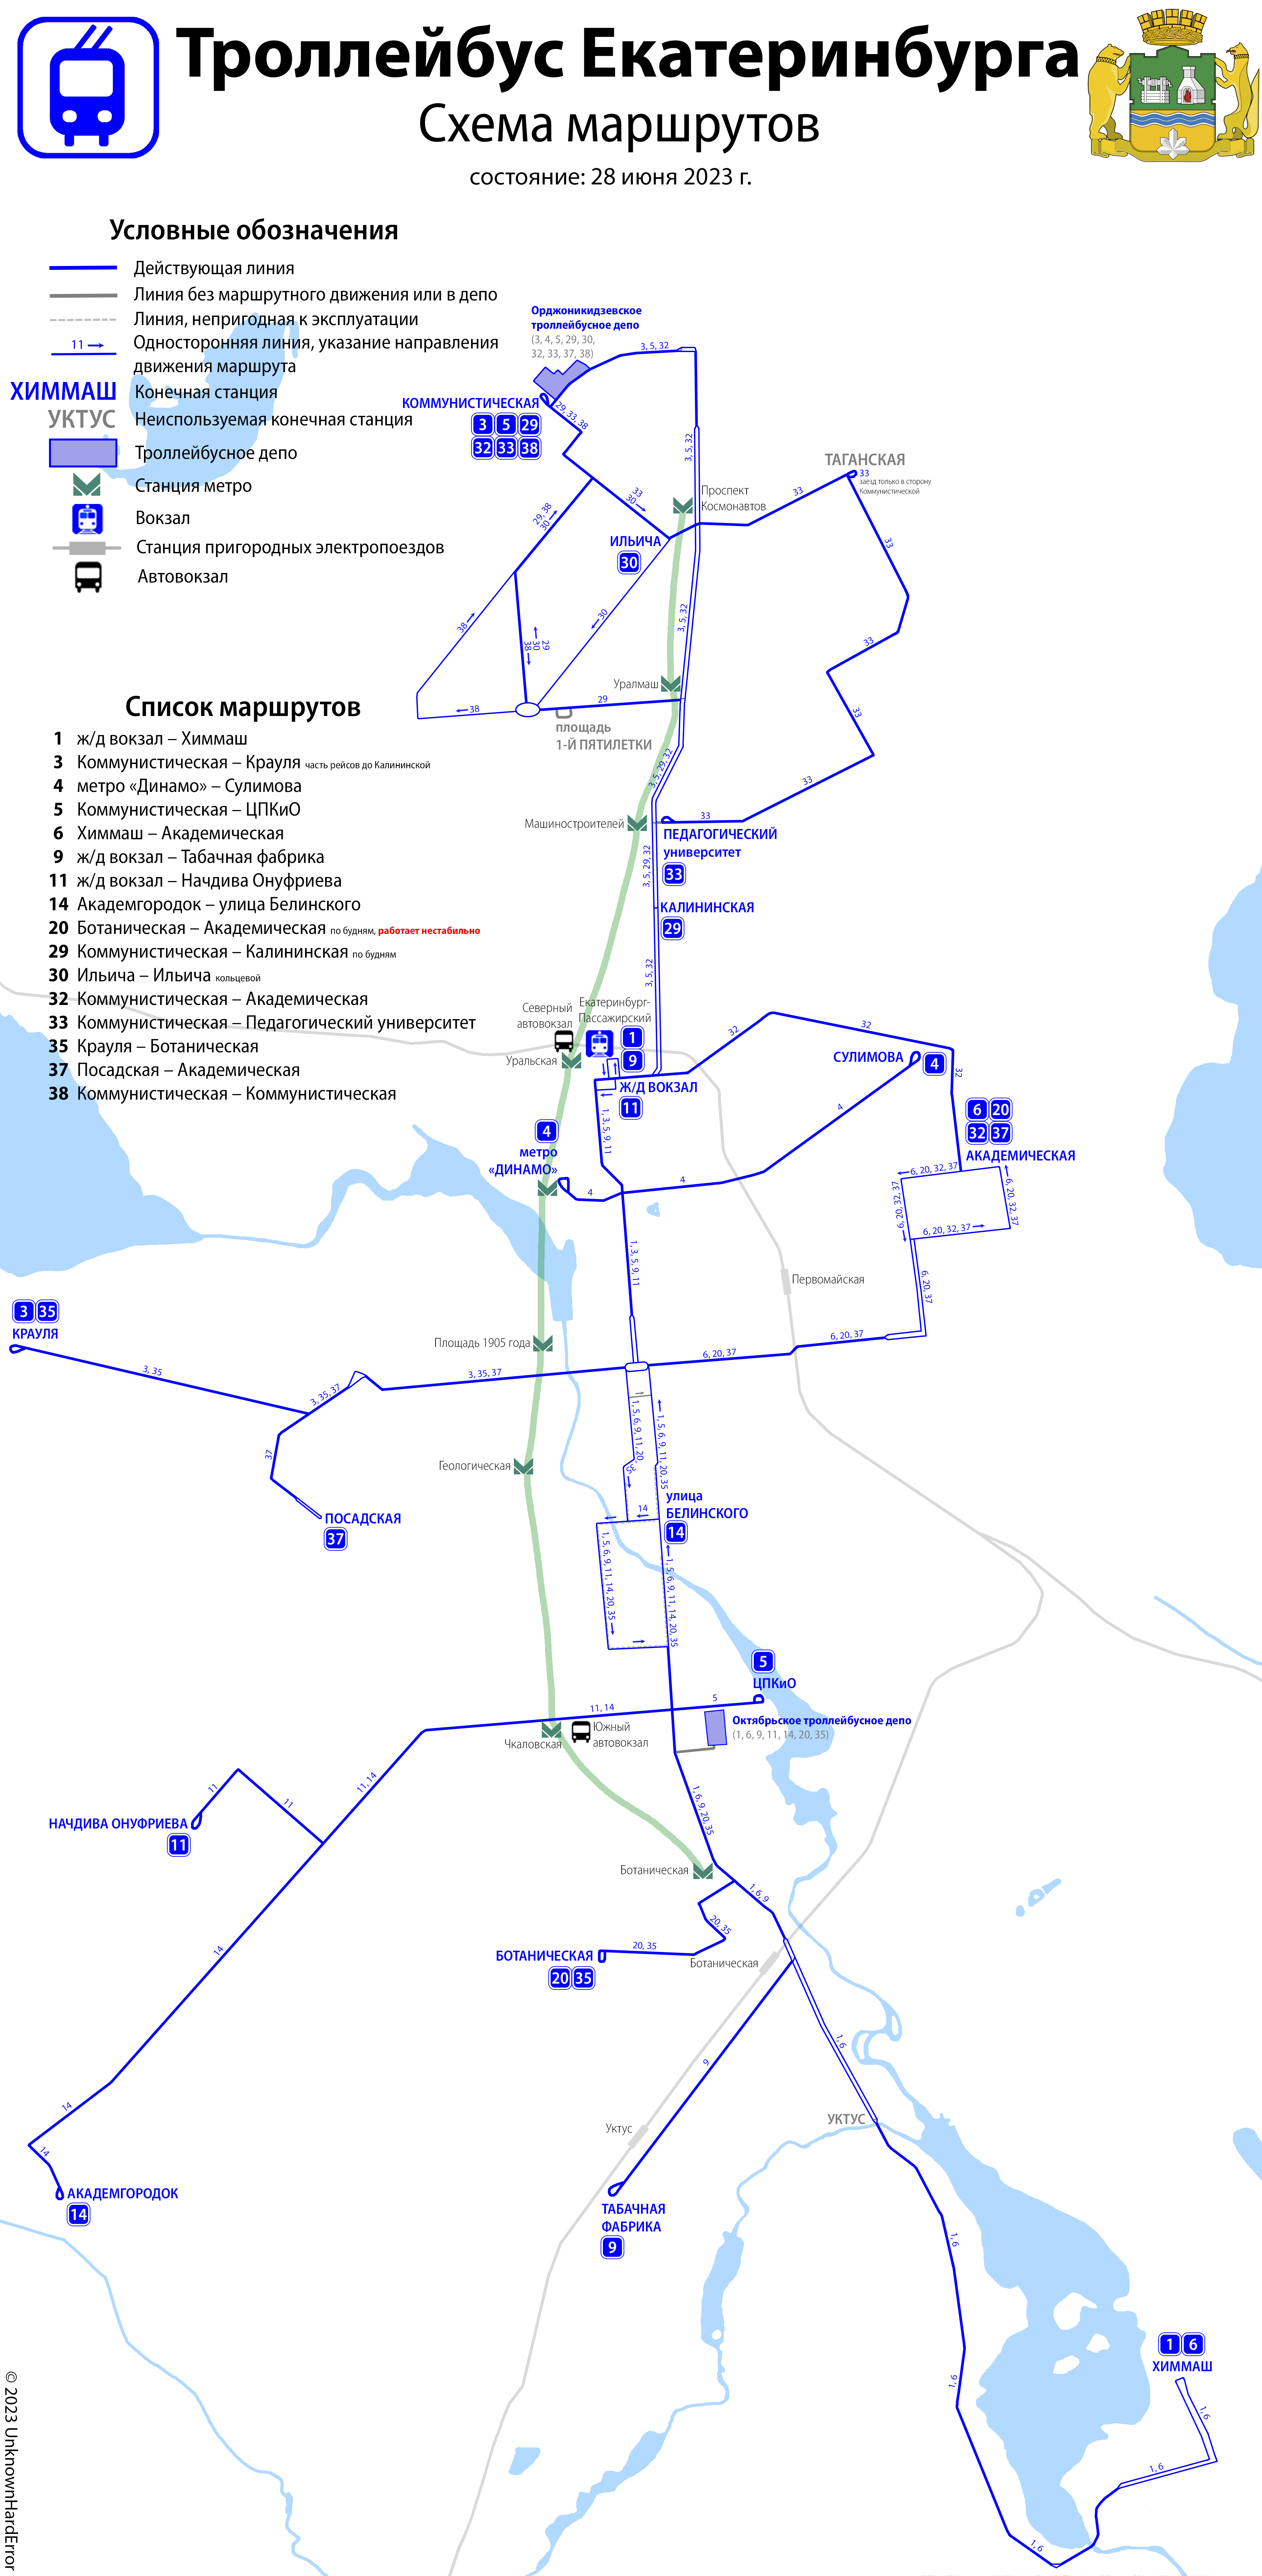 Екатеринбург — Схемы